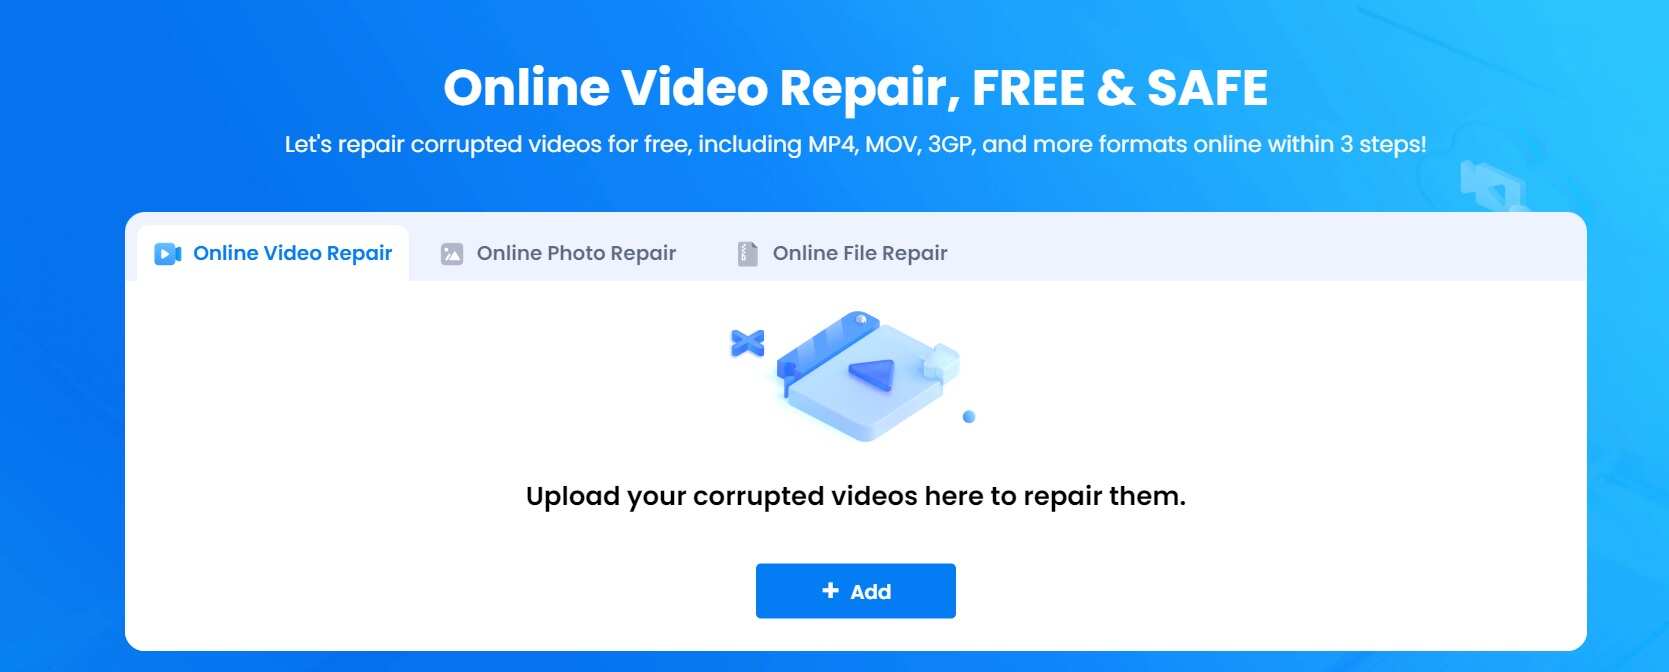 wondershare online video repair tool